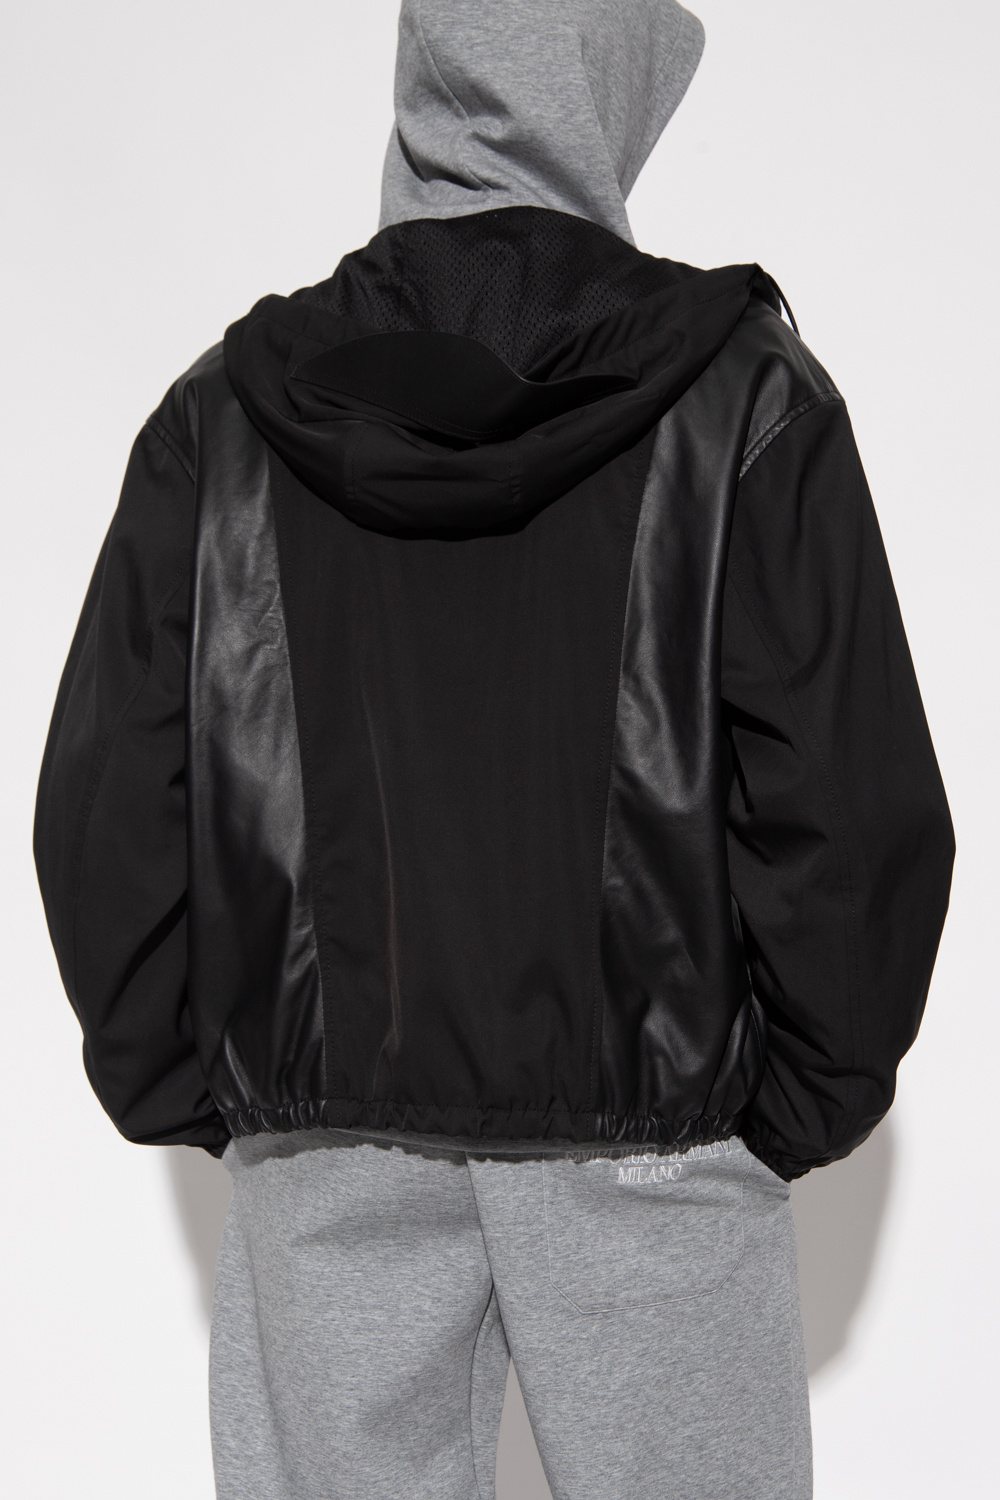 Emporio armani XK230 Leather jacket